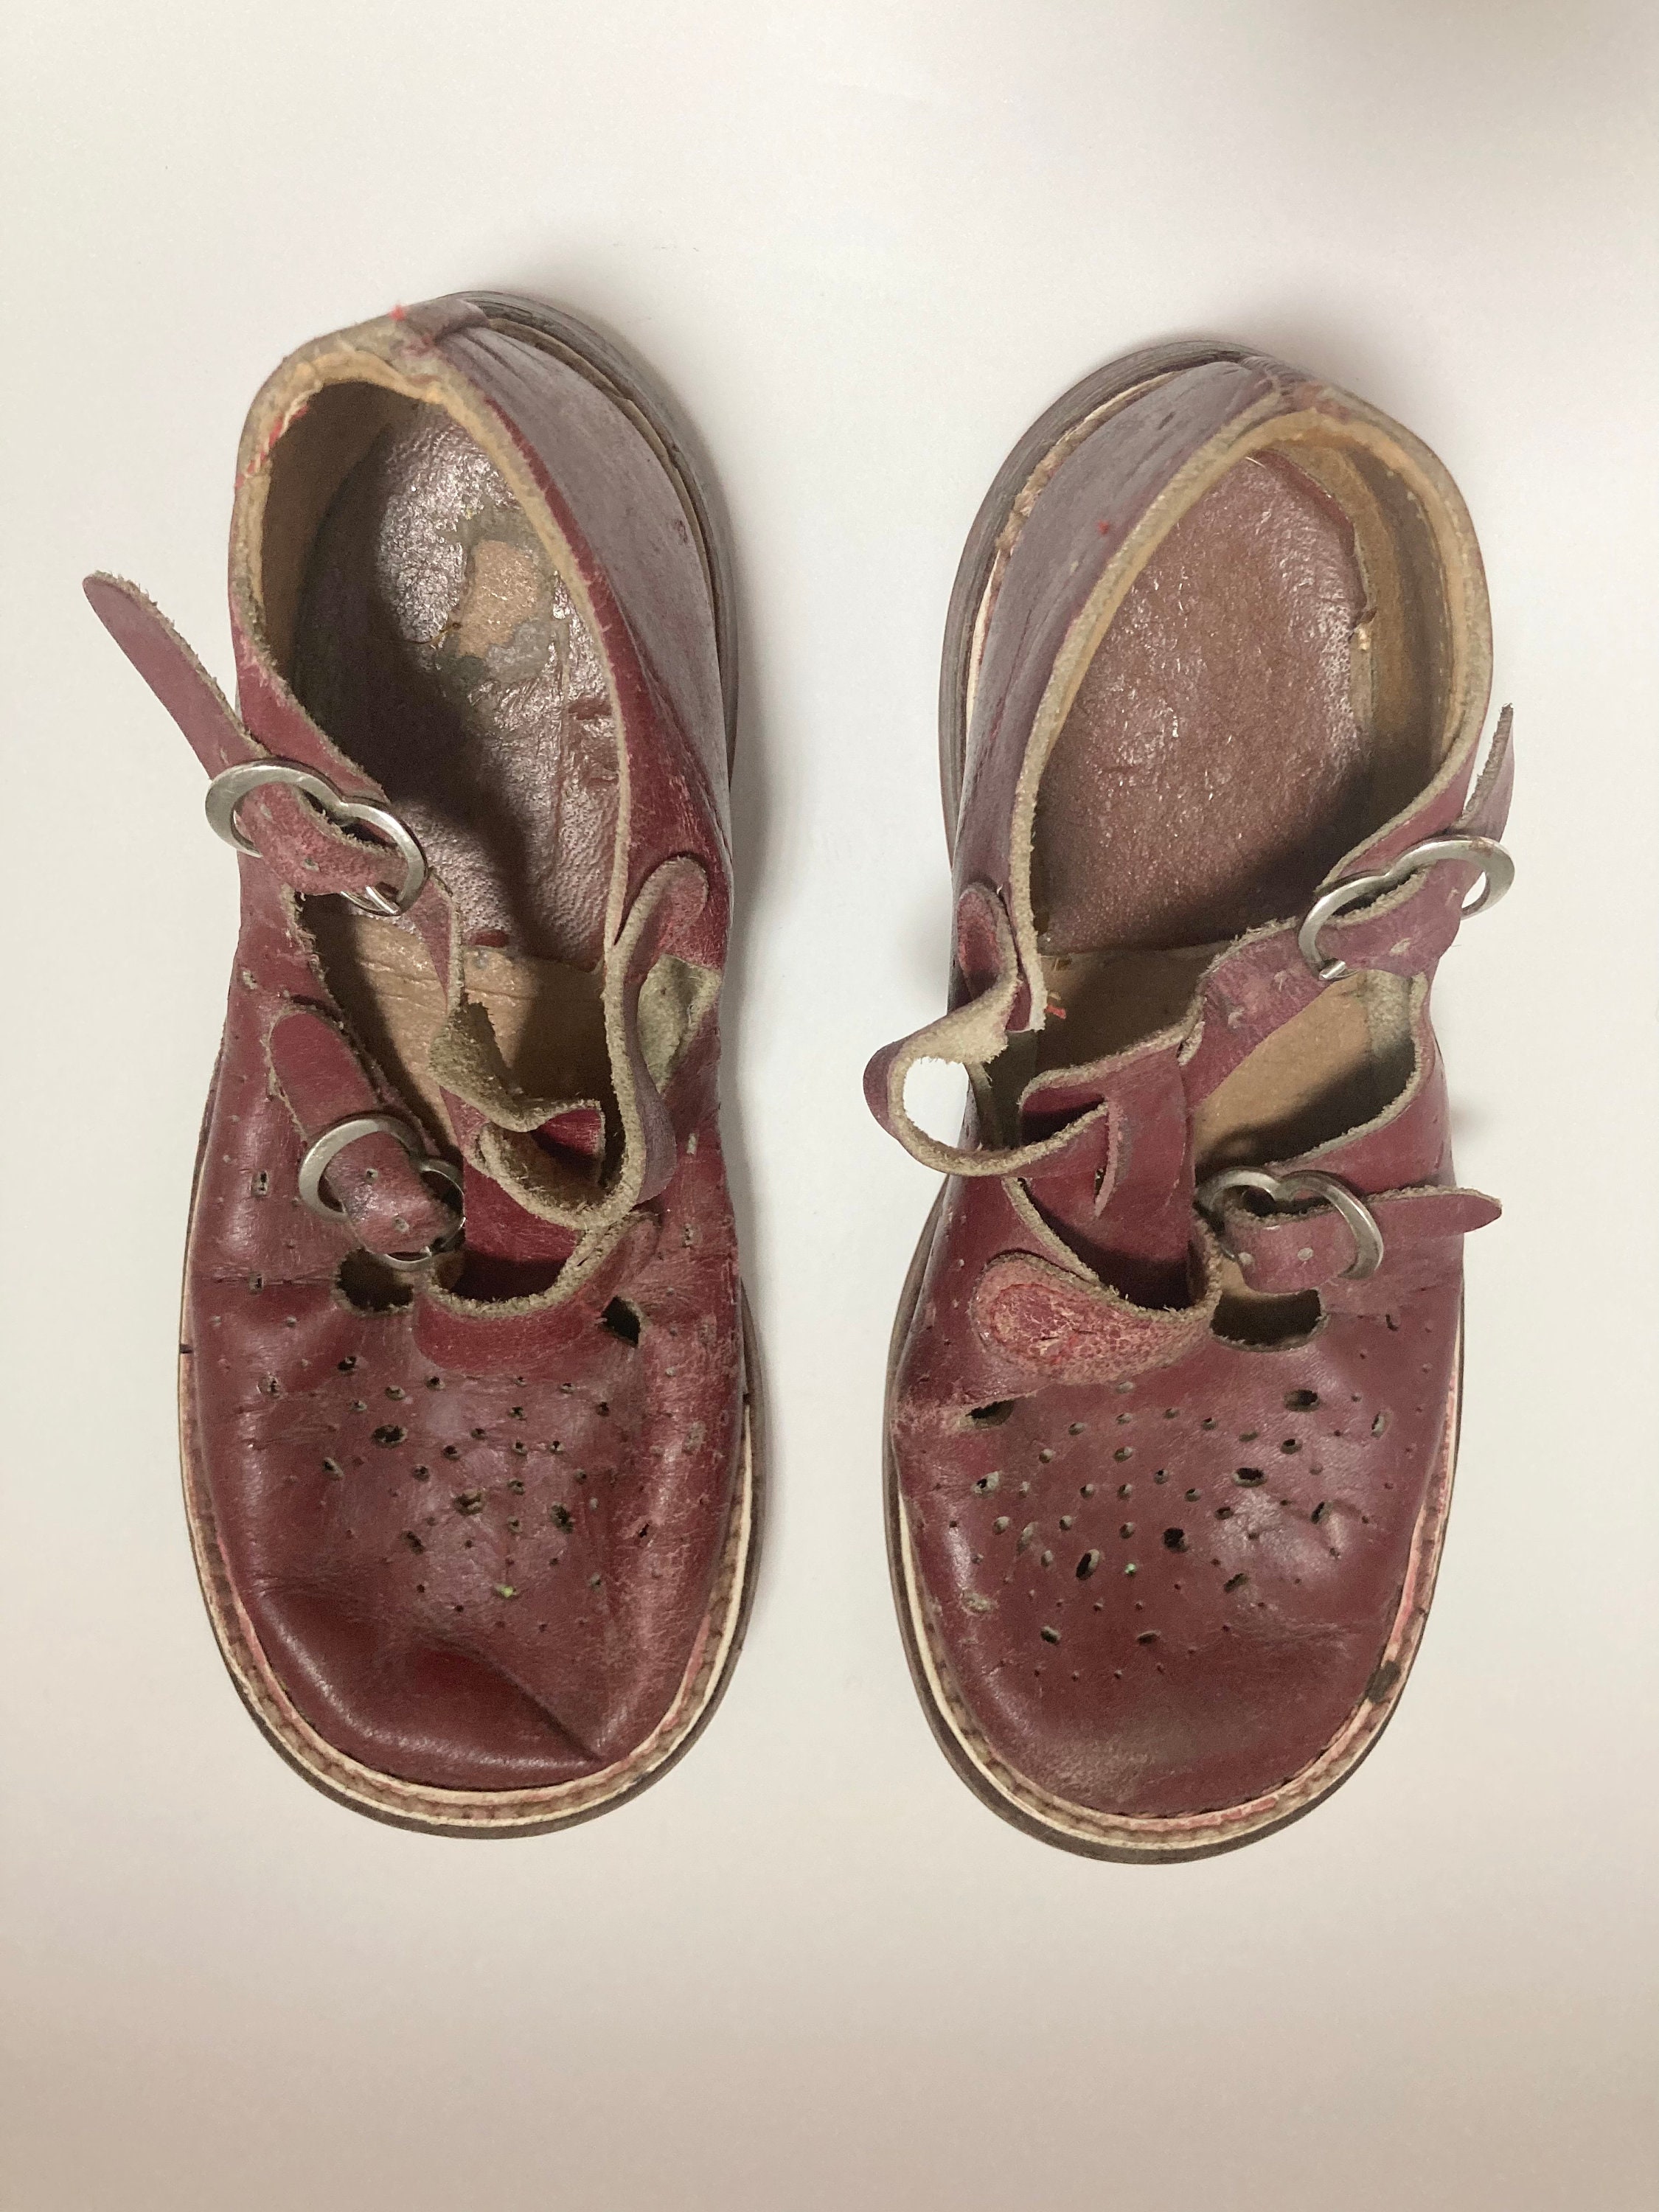 Vintage childrens red/maroon bear foot air flex shoes Schoenen Meisjesschoenen Mary Janes 